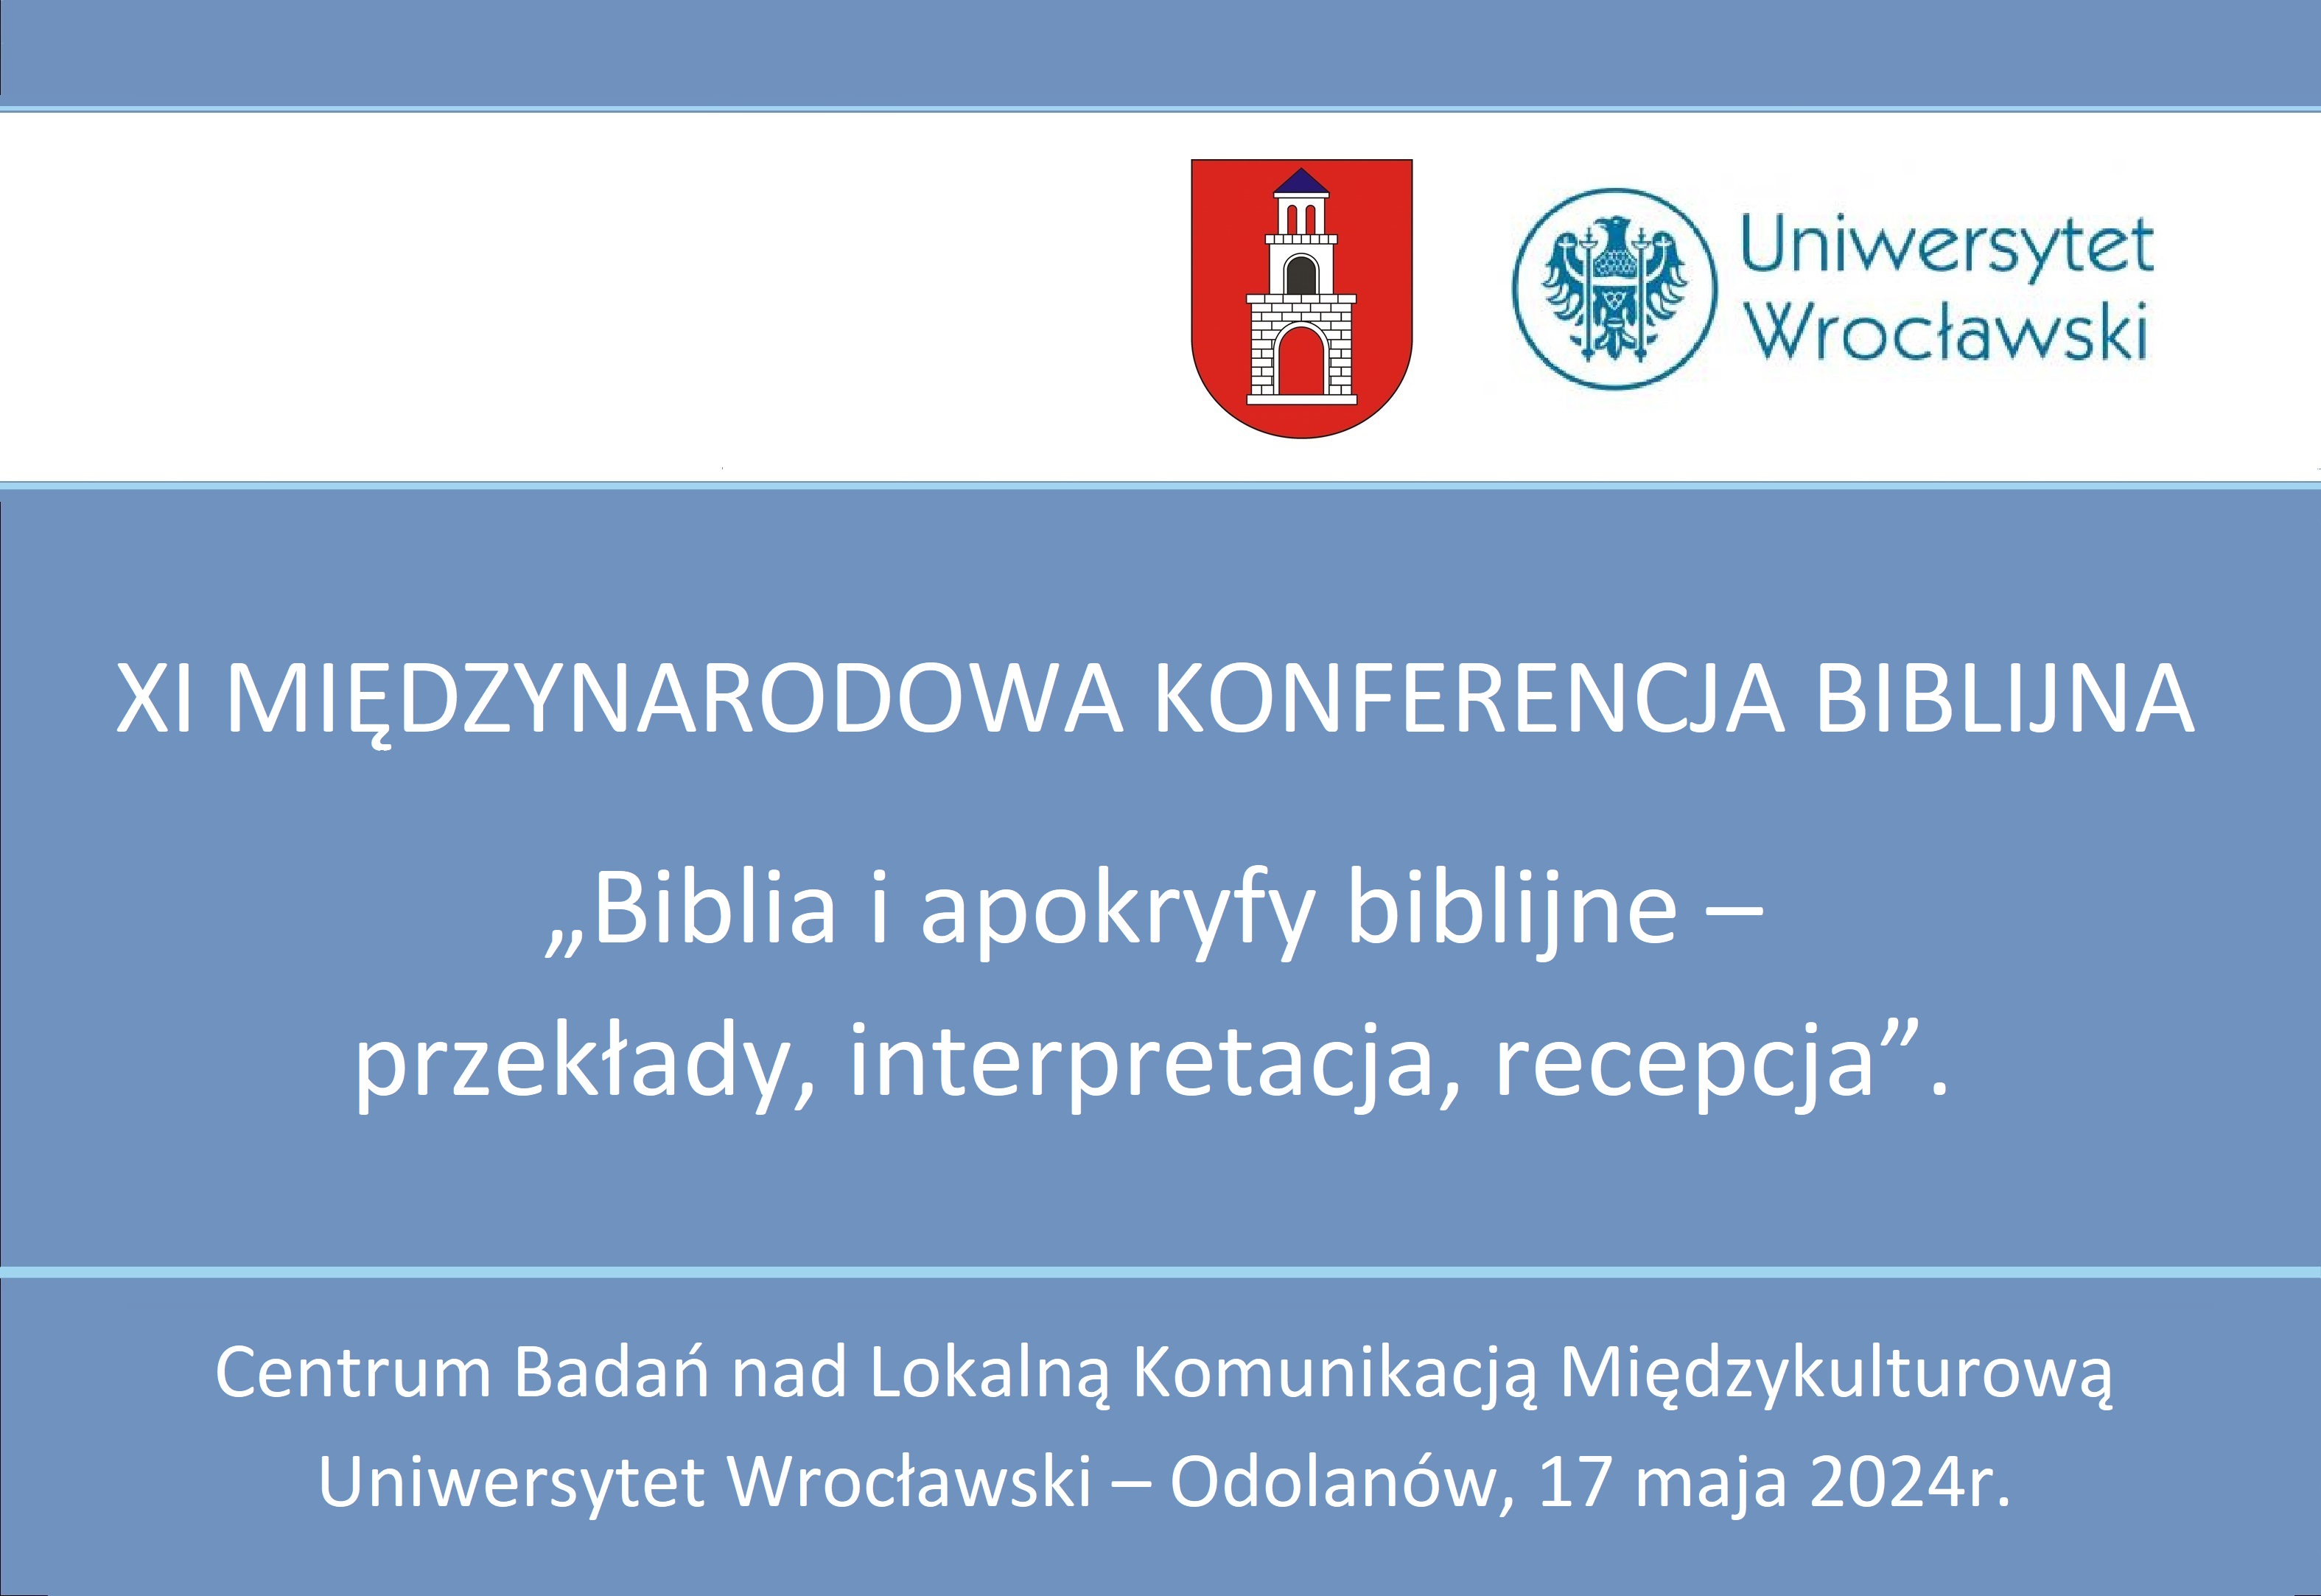 Już w najbliższy piątek odbędzie się XI Międzynarodowa Konferencja Biblijna